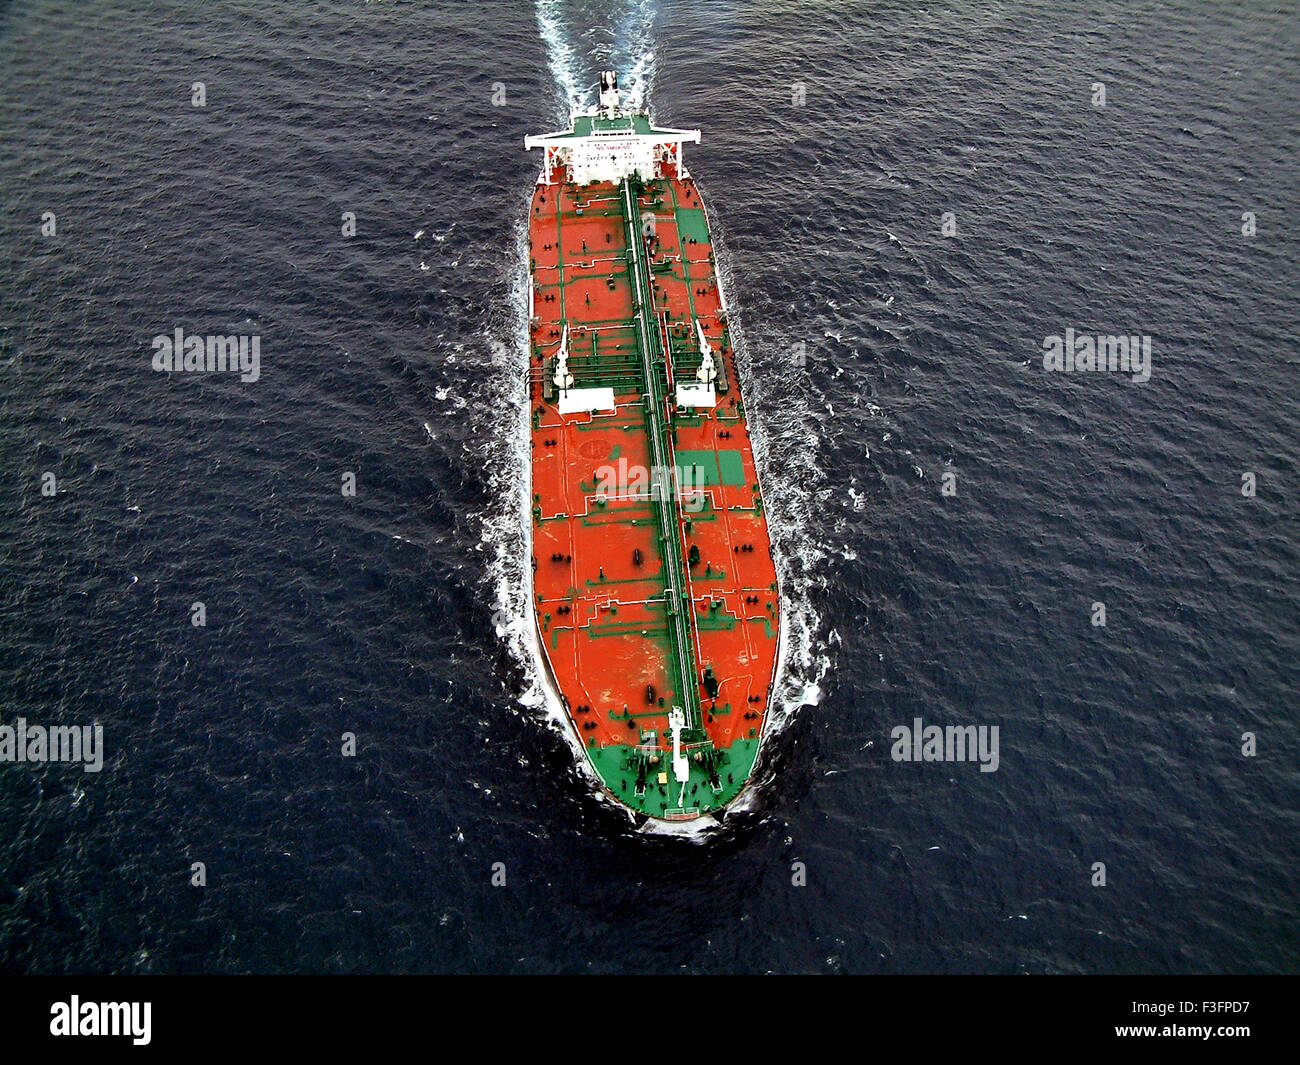 Oil tanker in Atlantic ocean Stock Photo